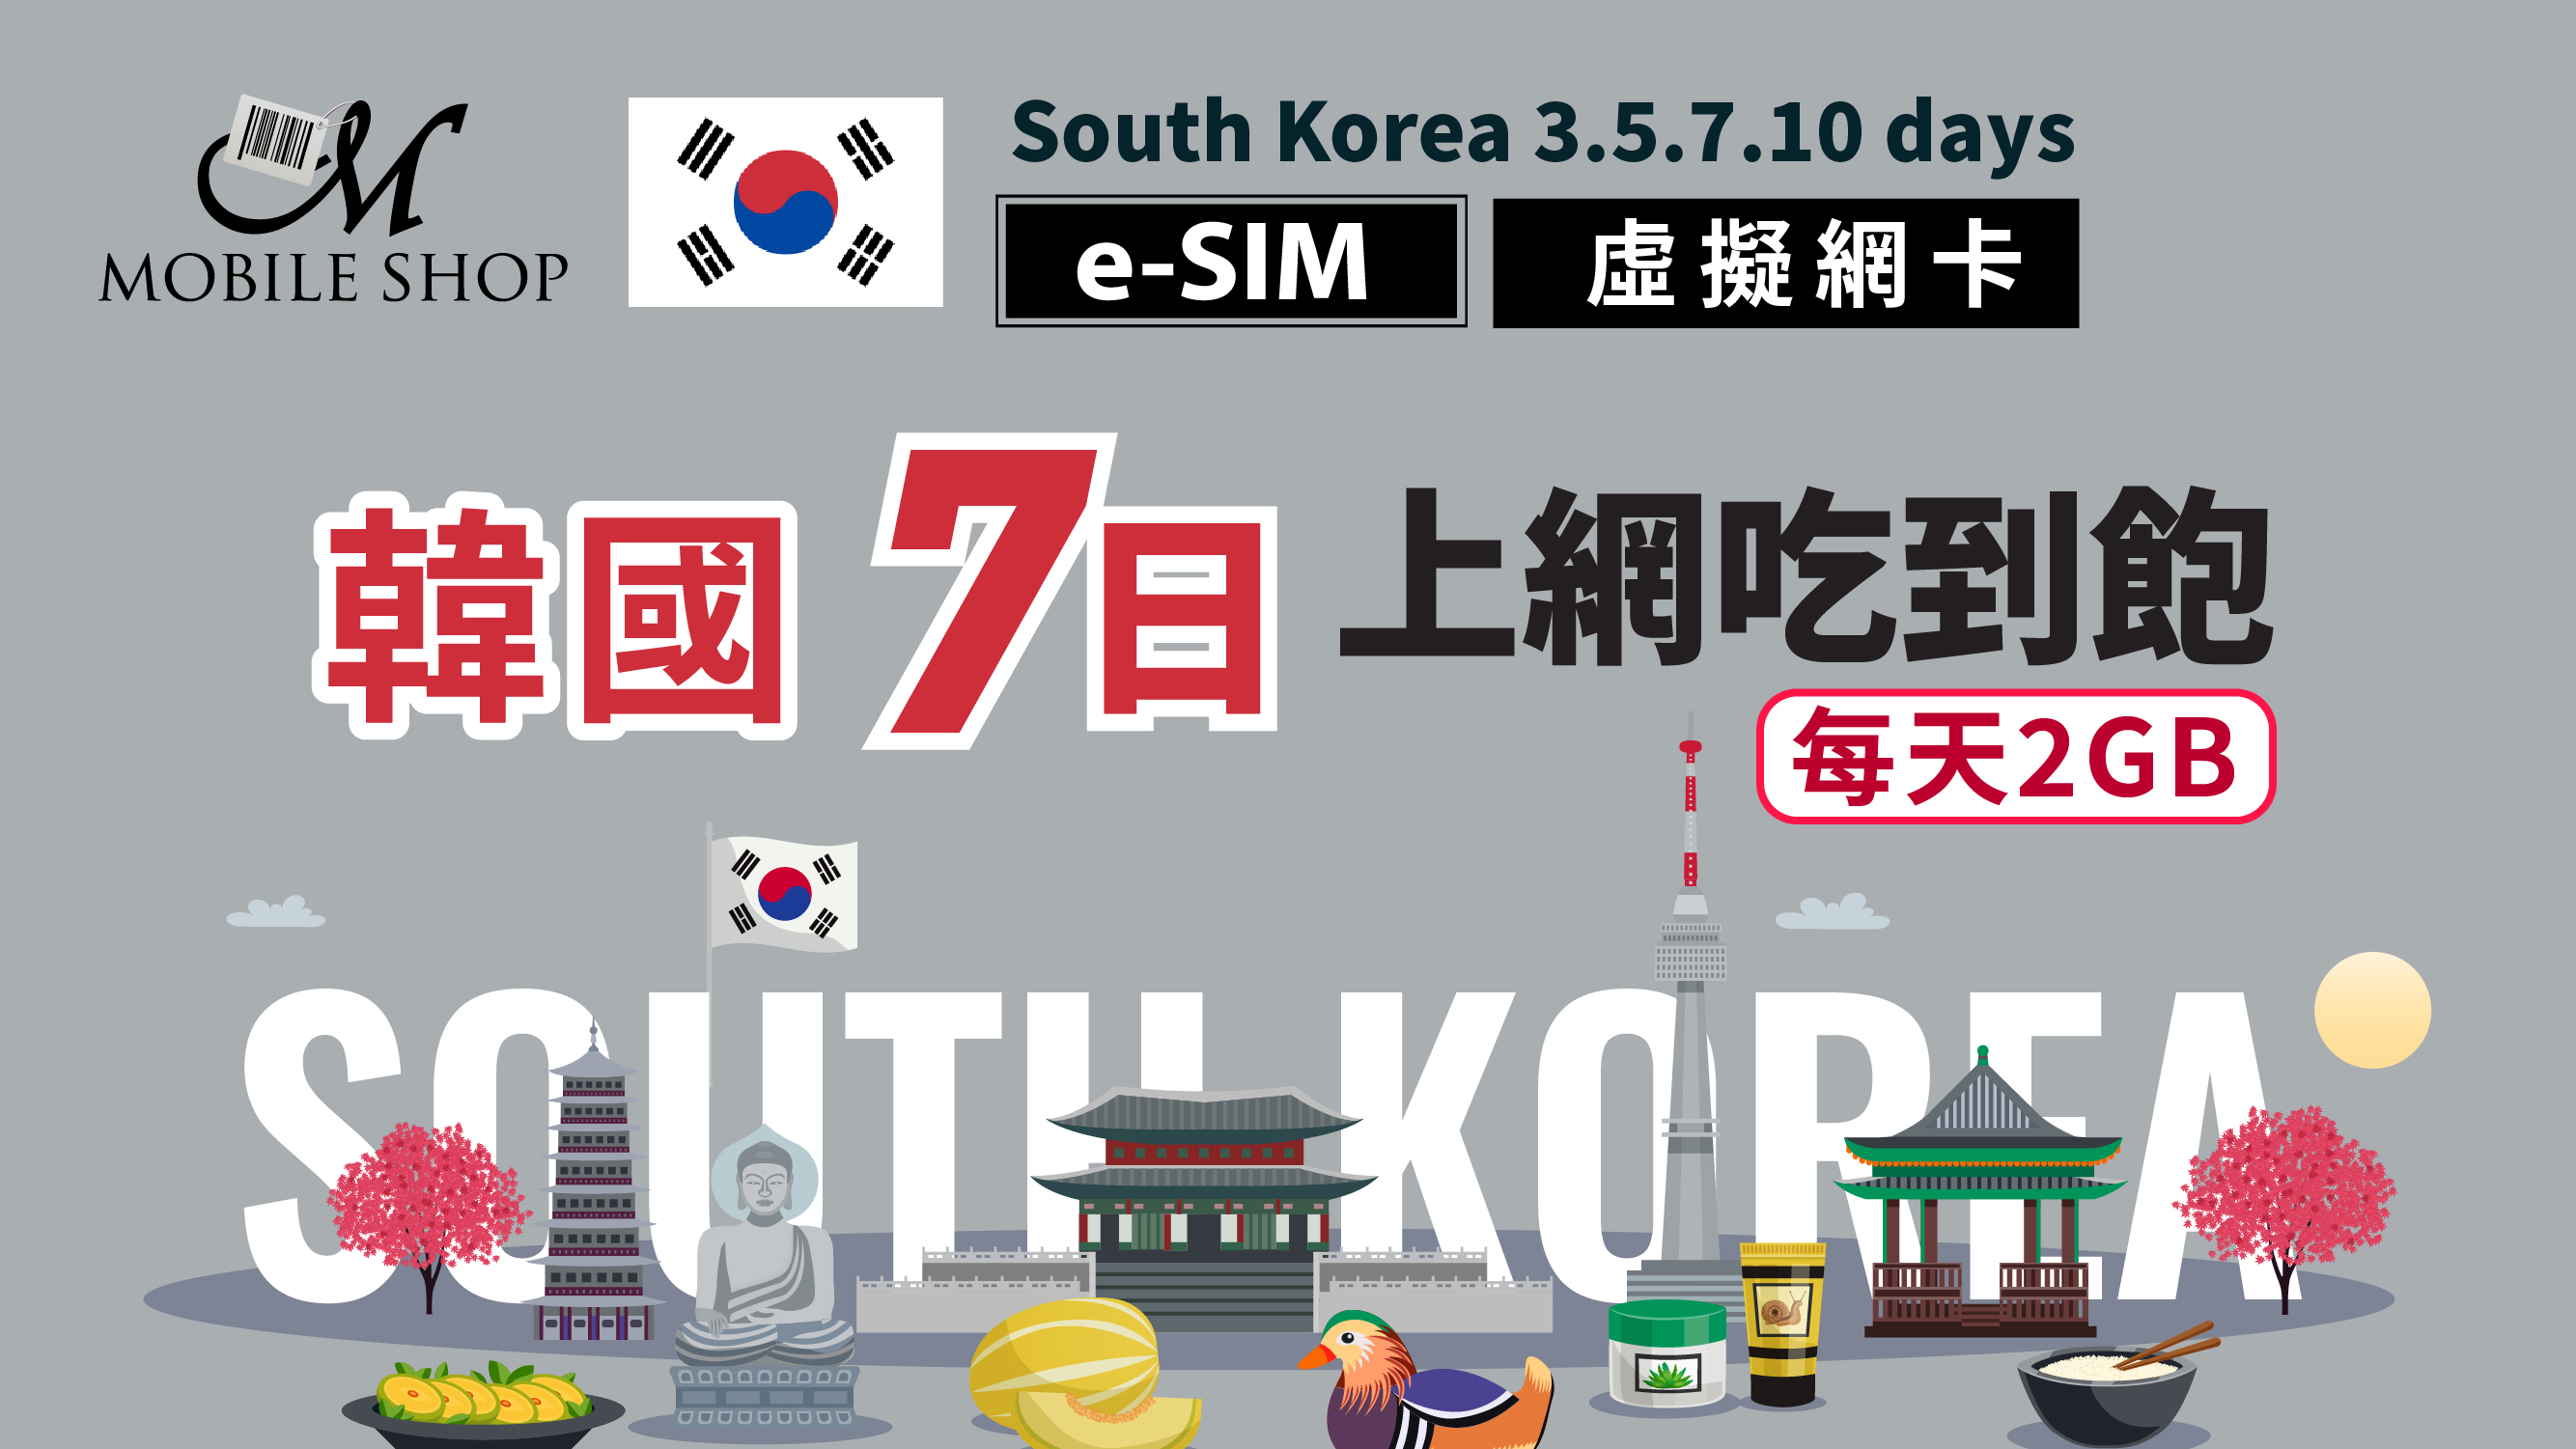 eSIM Korea 7days/2GB day unlimited data